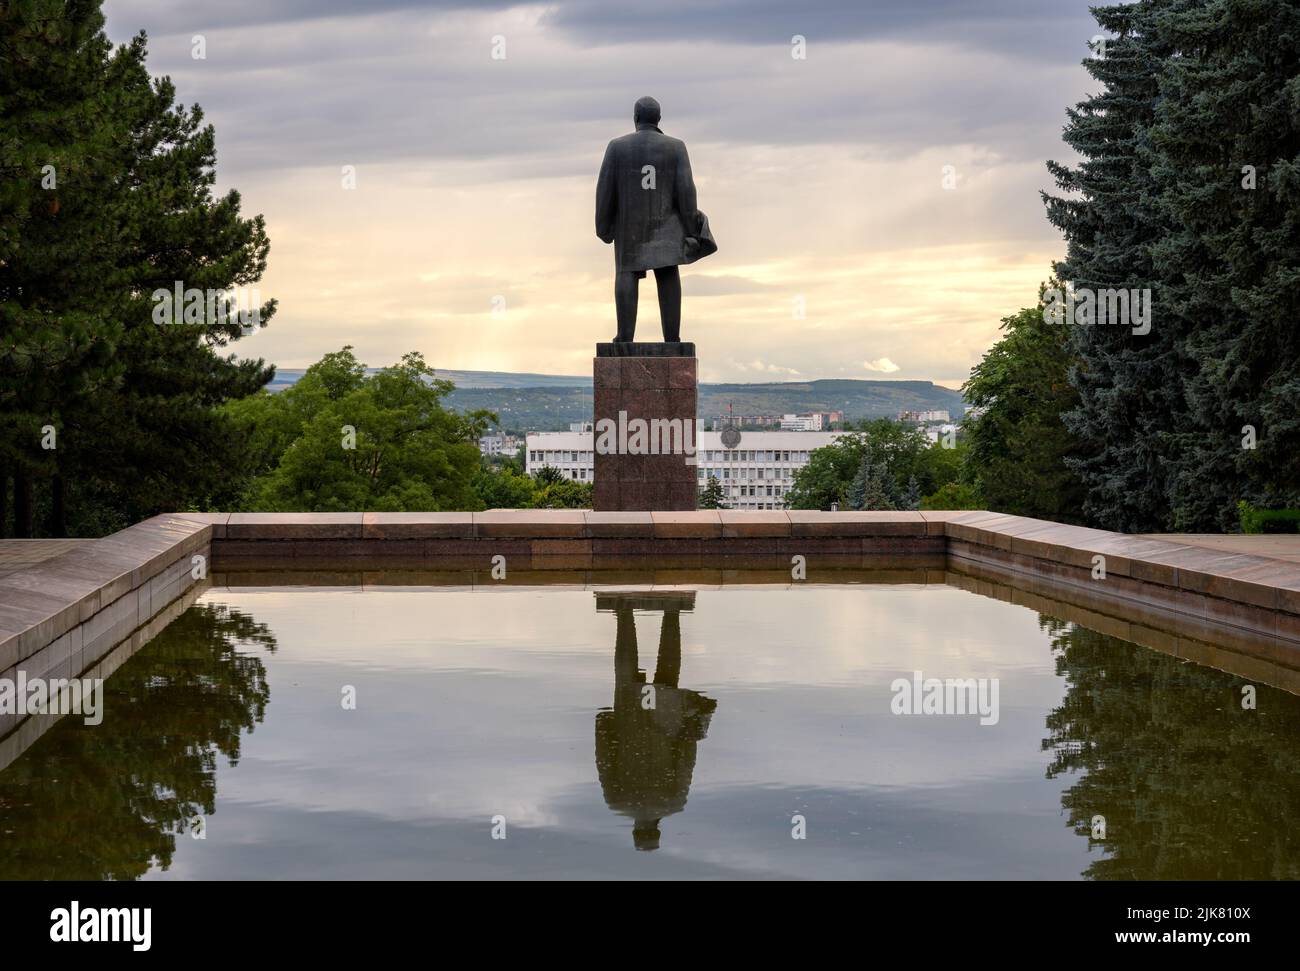 Monumento a Lenin al atardecer, Pyatigorsk, Krai de Stavropol, Rusia. Paisaje de la antigua gran estatua, monumento histórico de la ciudad de Pyatigorsk instalado en 1971. Foto de stock